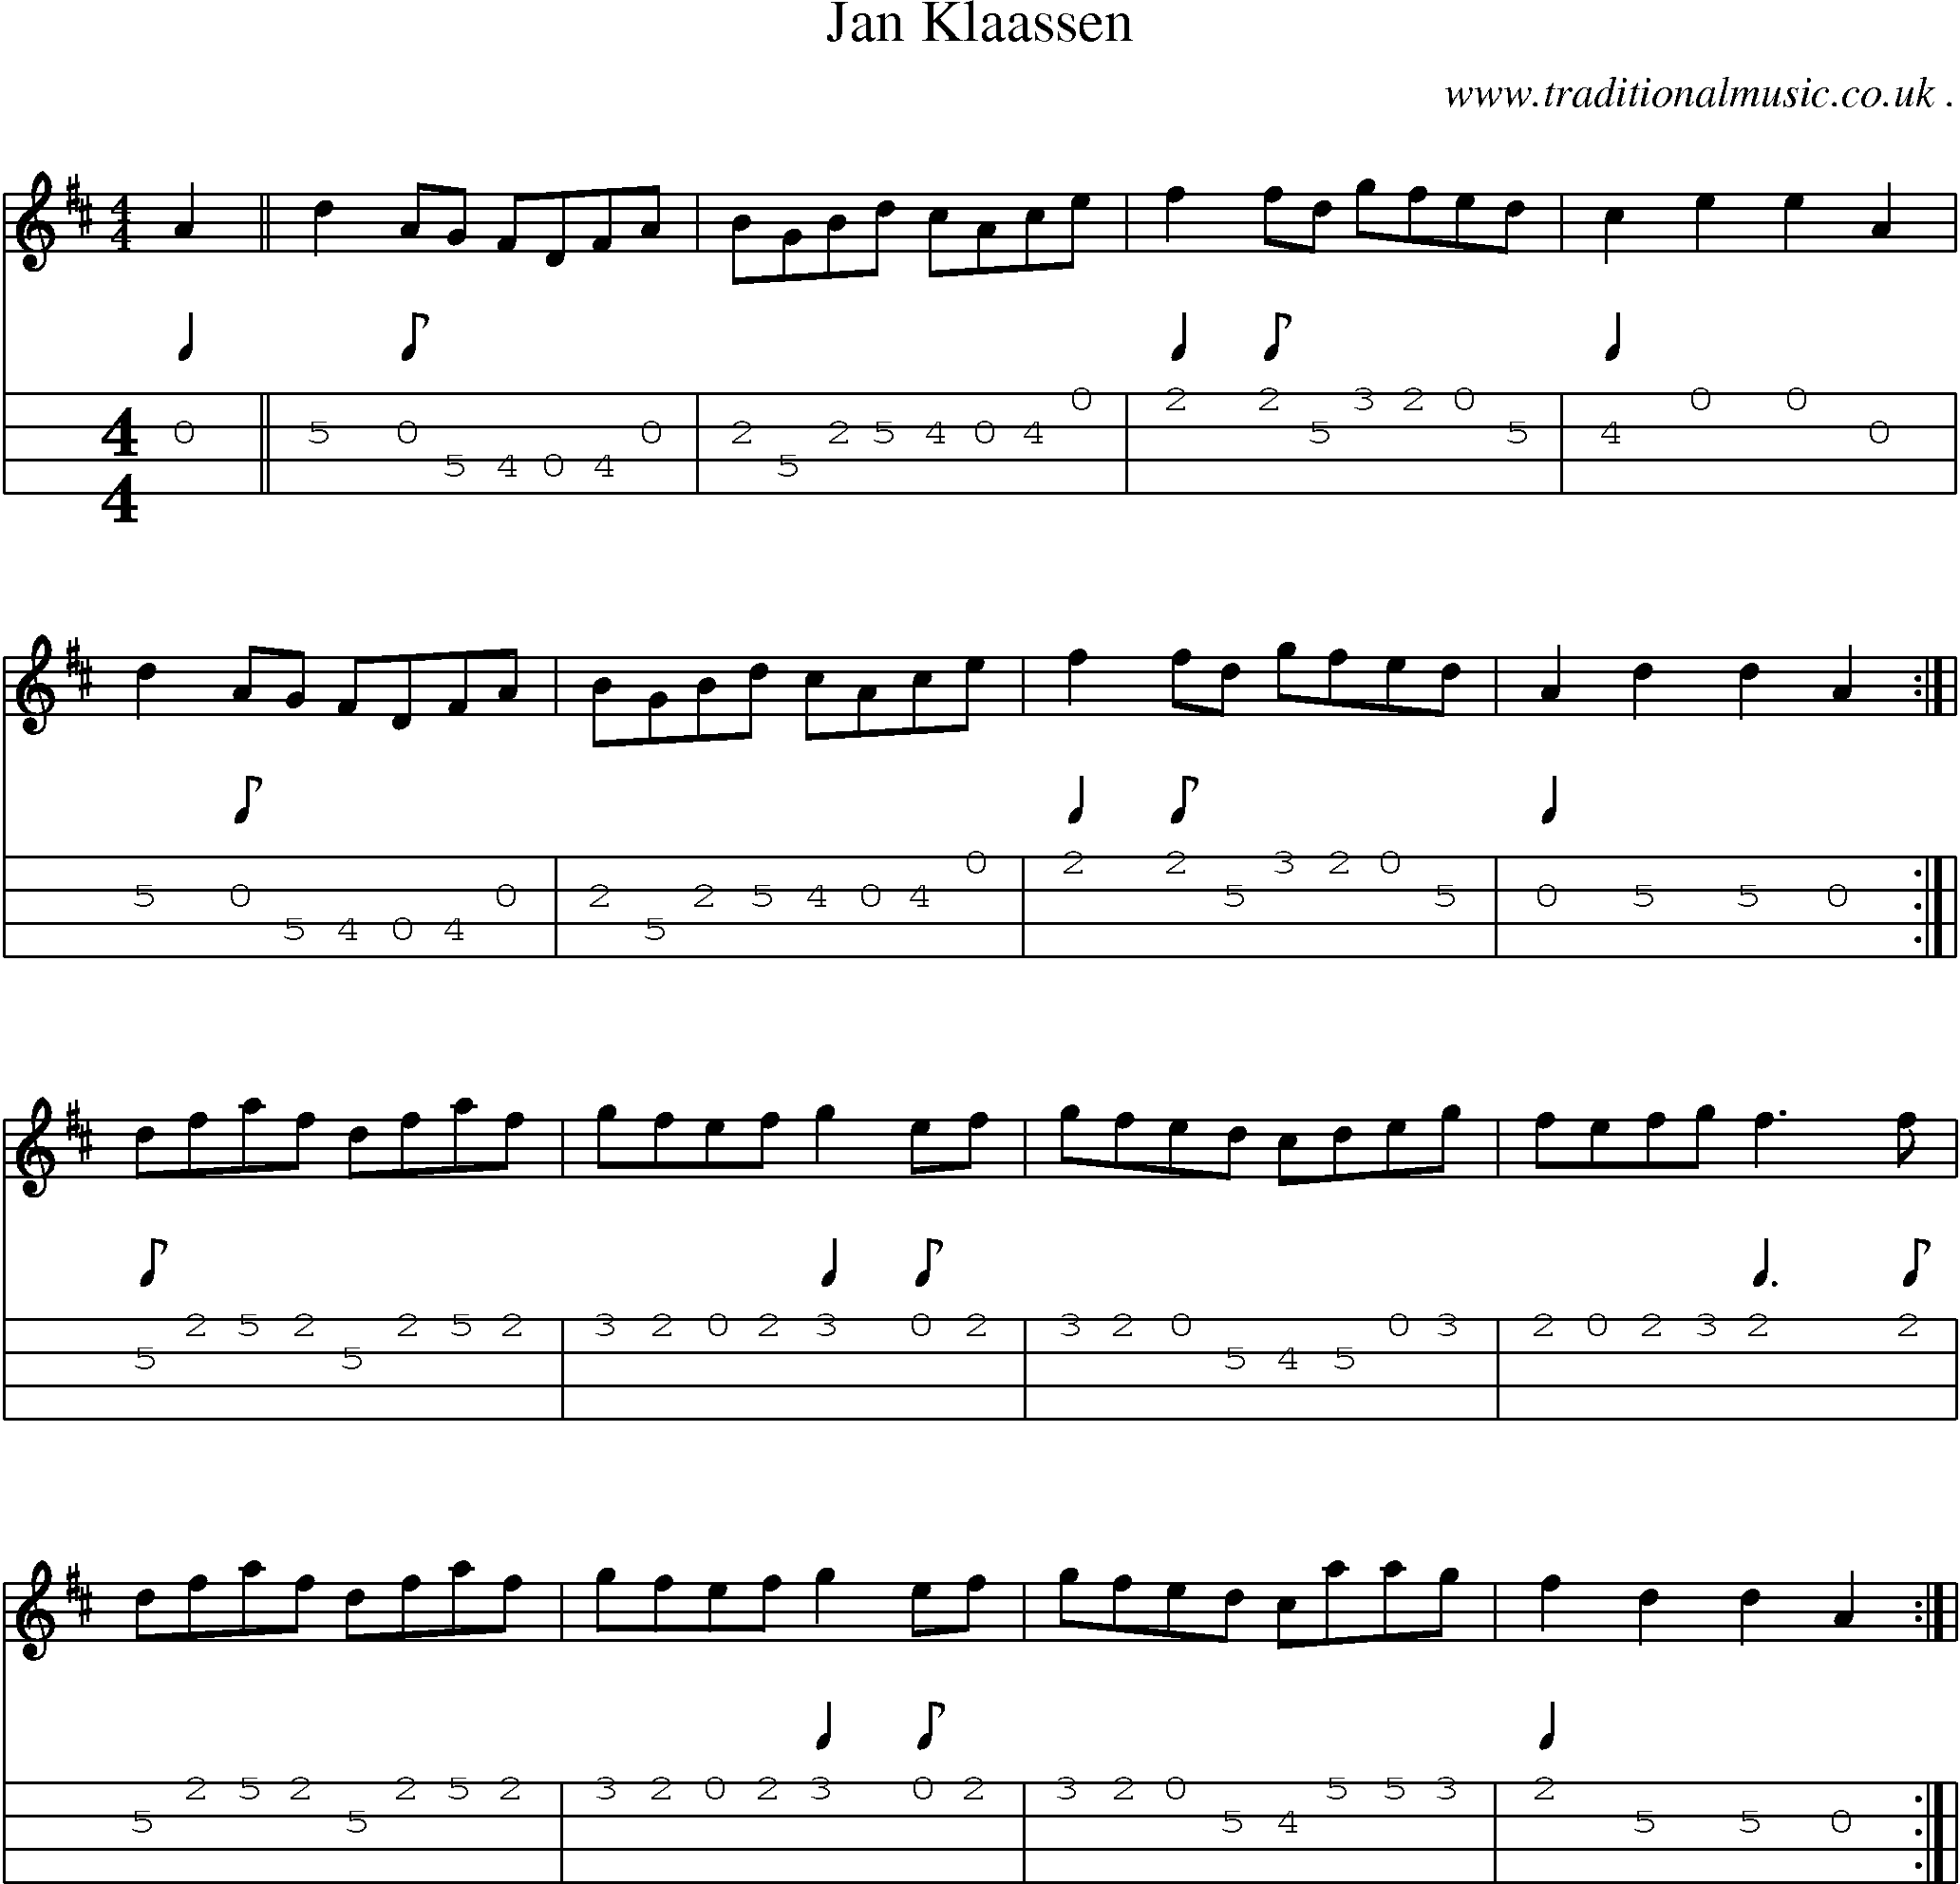 Sheet-Music and Mandolin Tabs for Jan Klaassen